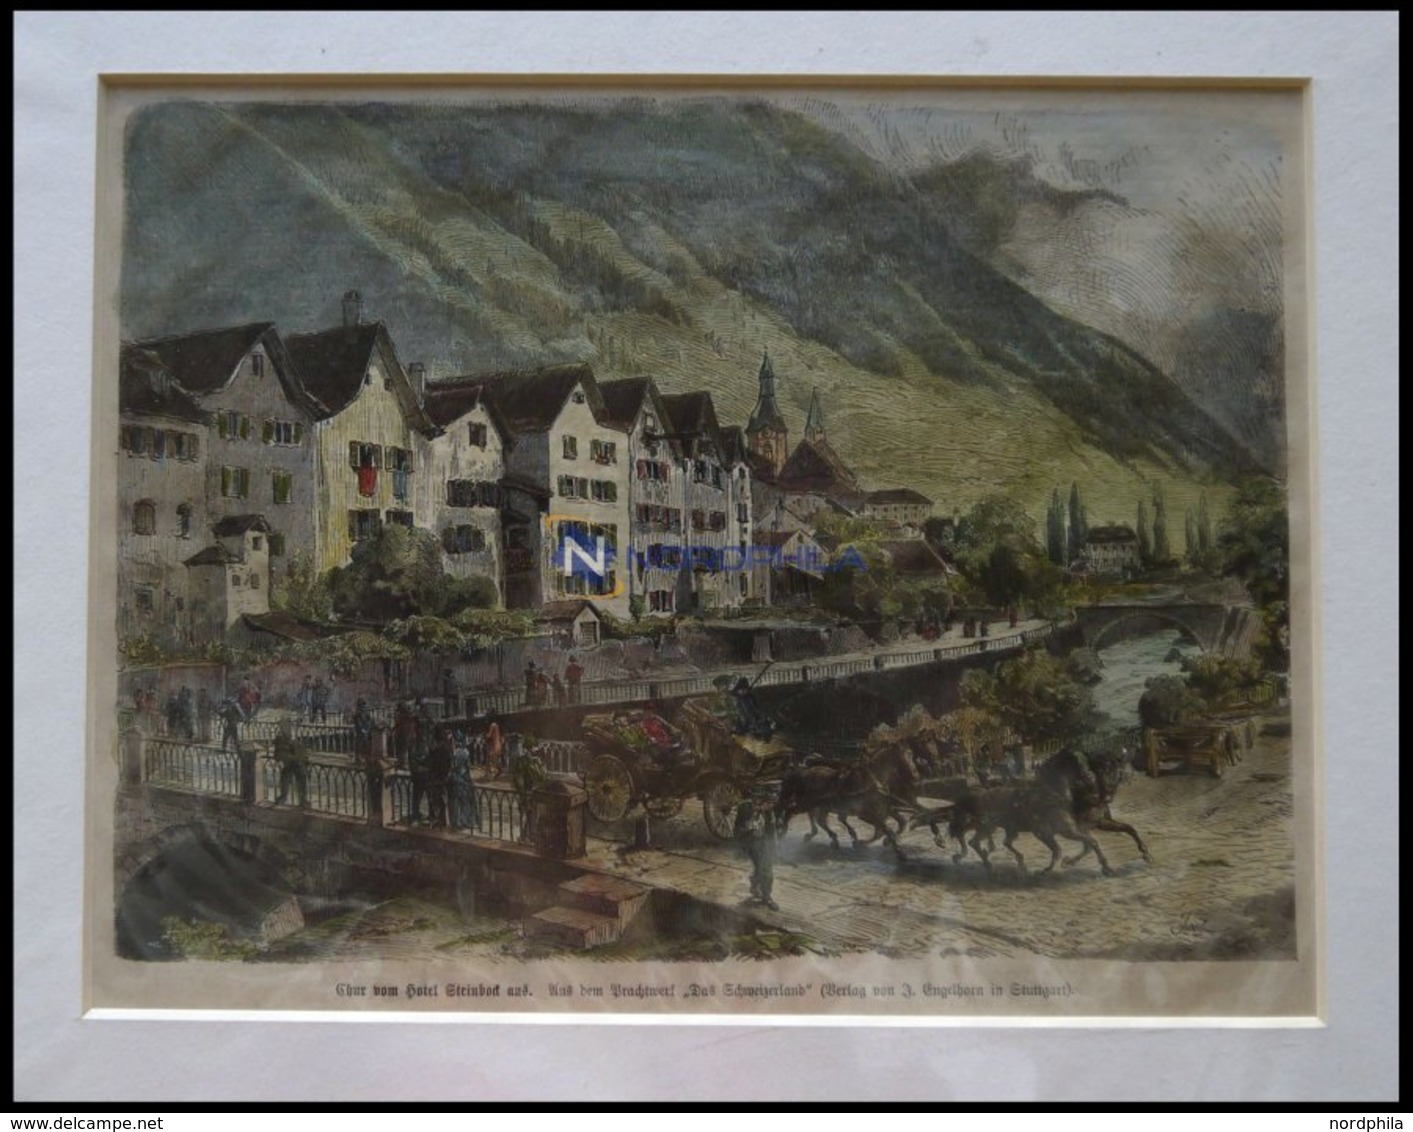 CHUR: Teilansicht Vom Hotel Steinbock Aus, Kolorierter Holzstich Um 1880 - Lithographies